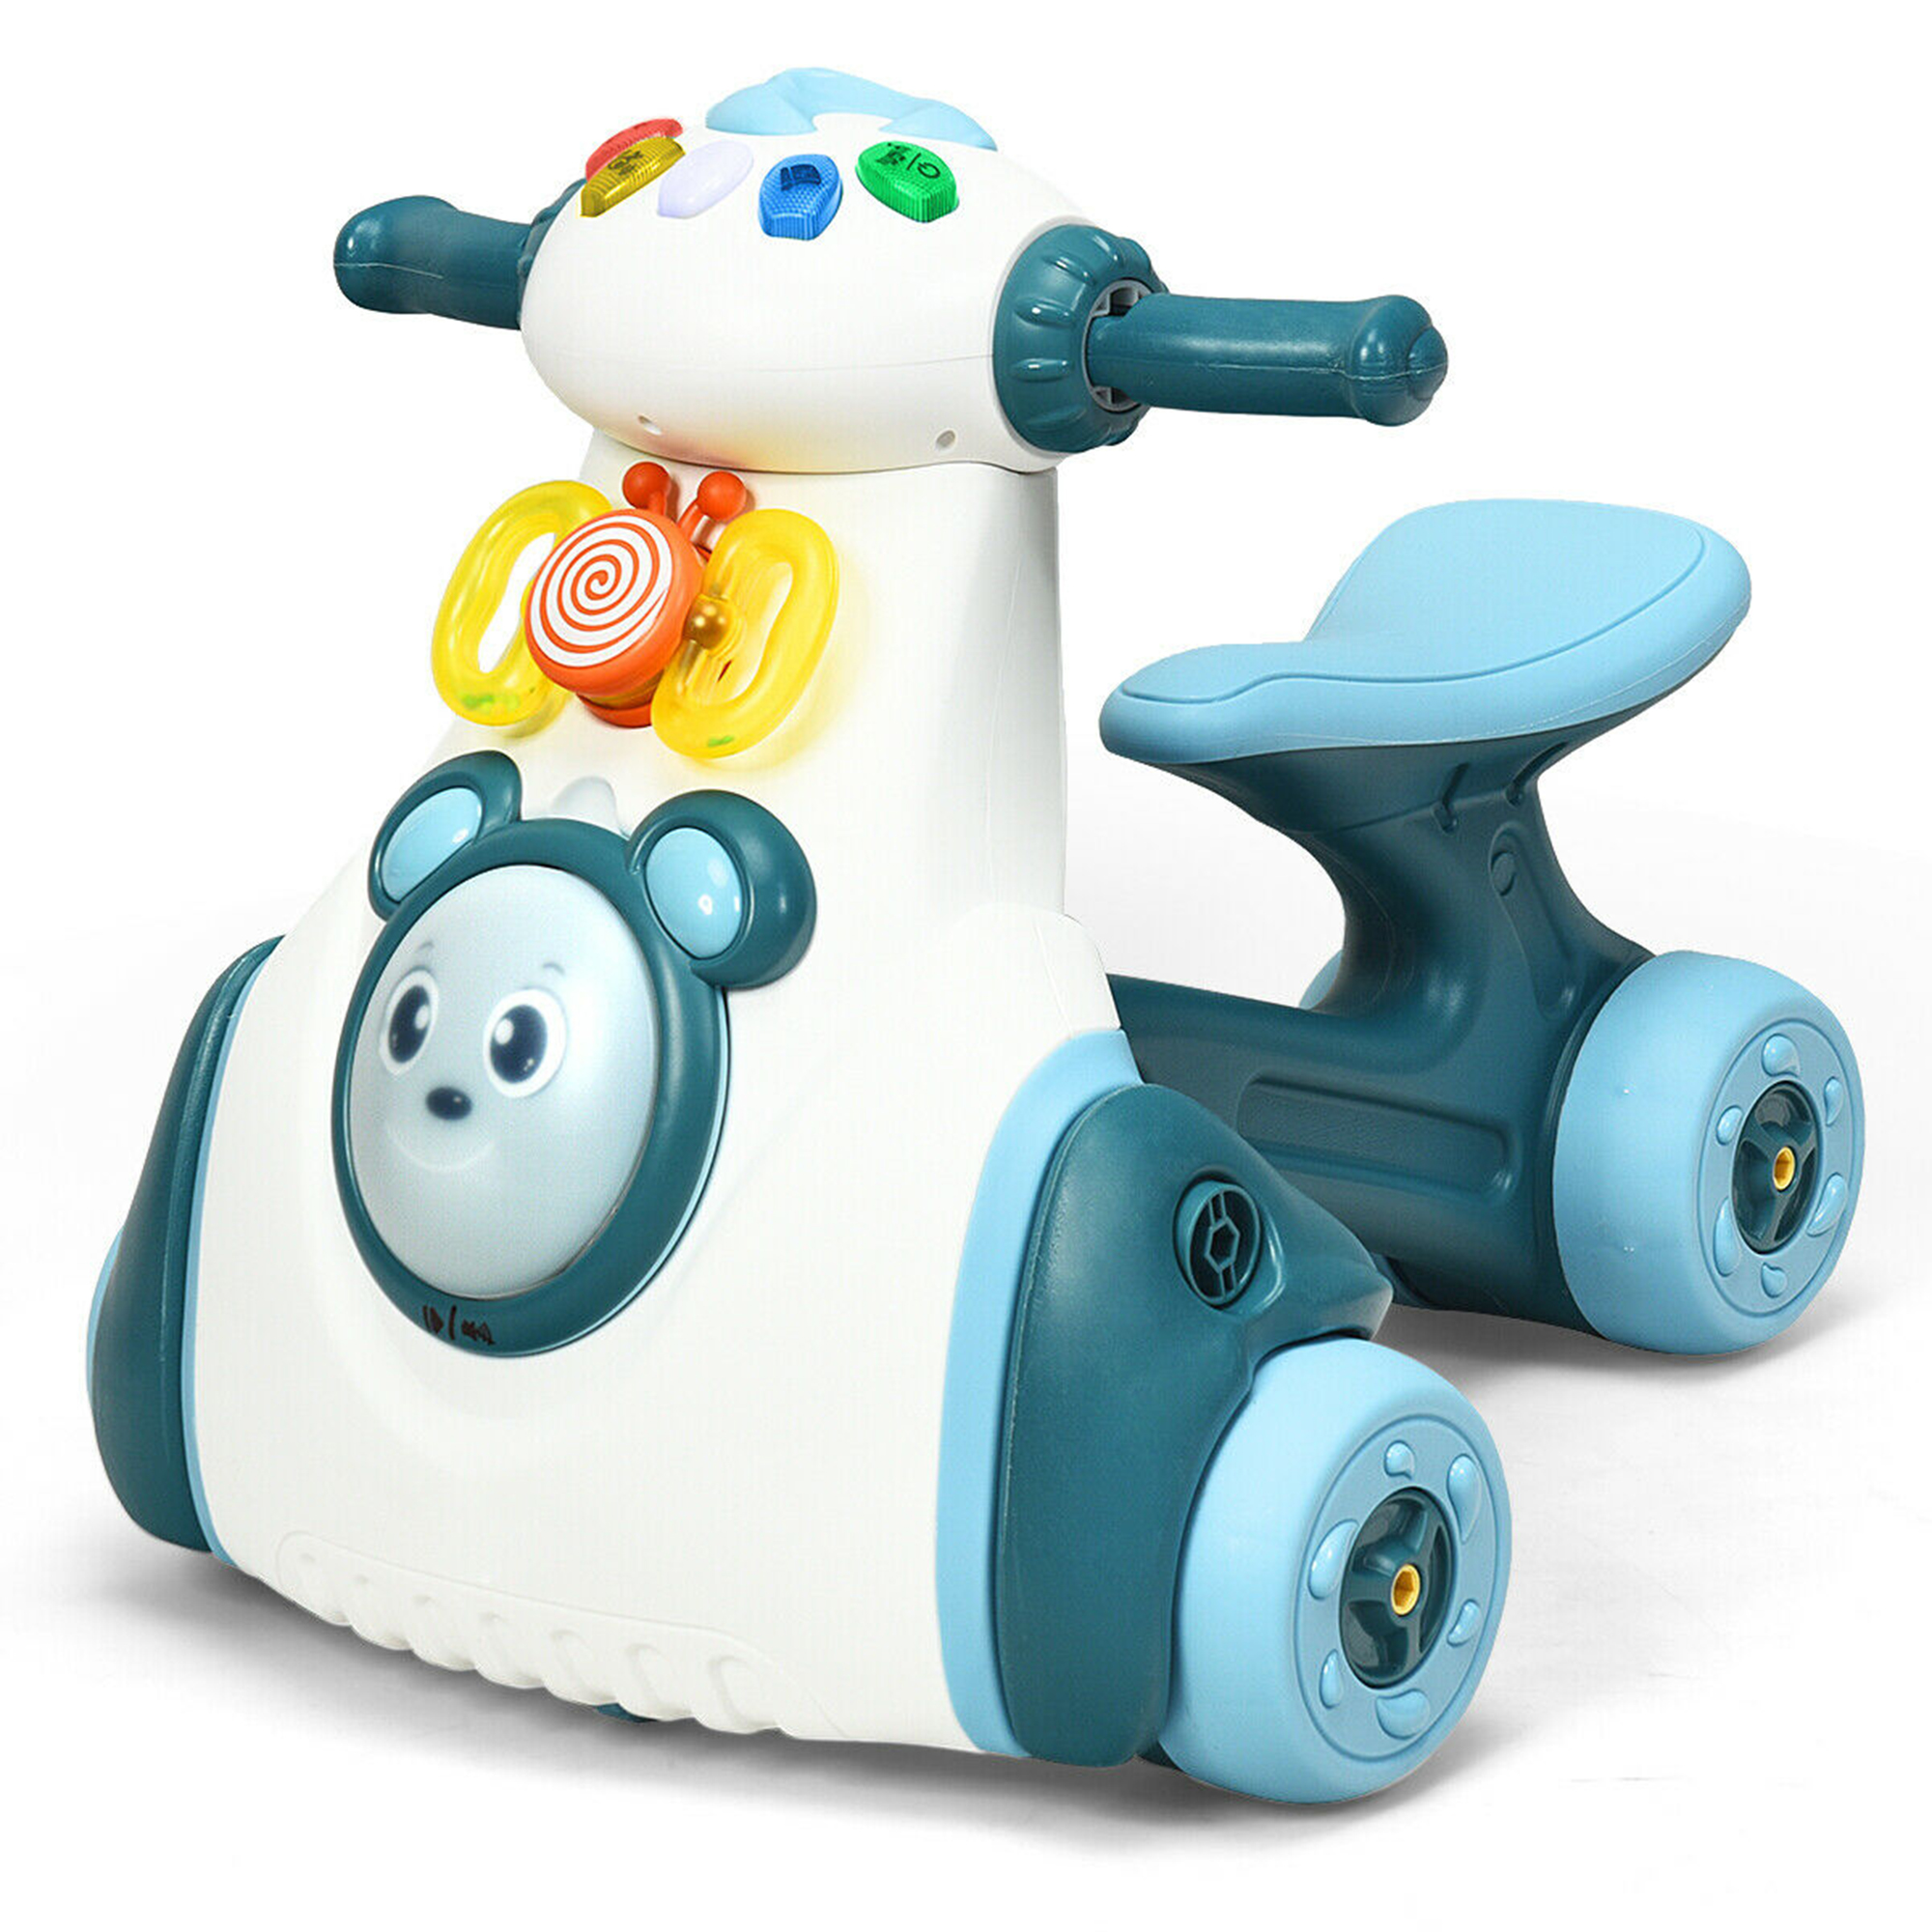 Gymax Baby Balance Bike Musical Ride Toy w/ Light & Sensing Function Toddler Walker - image 1 of 10